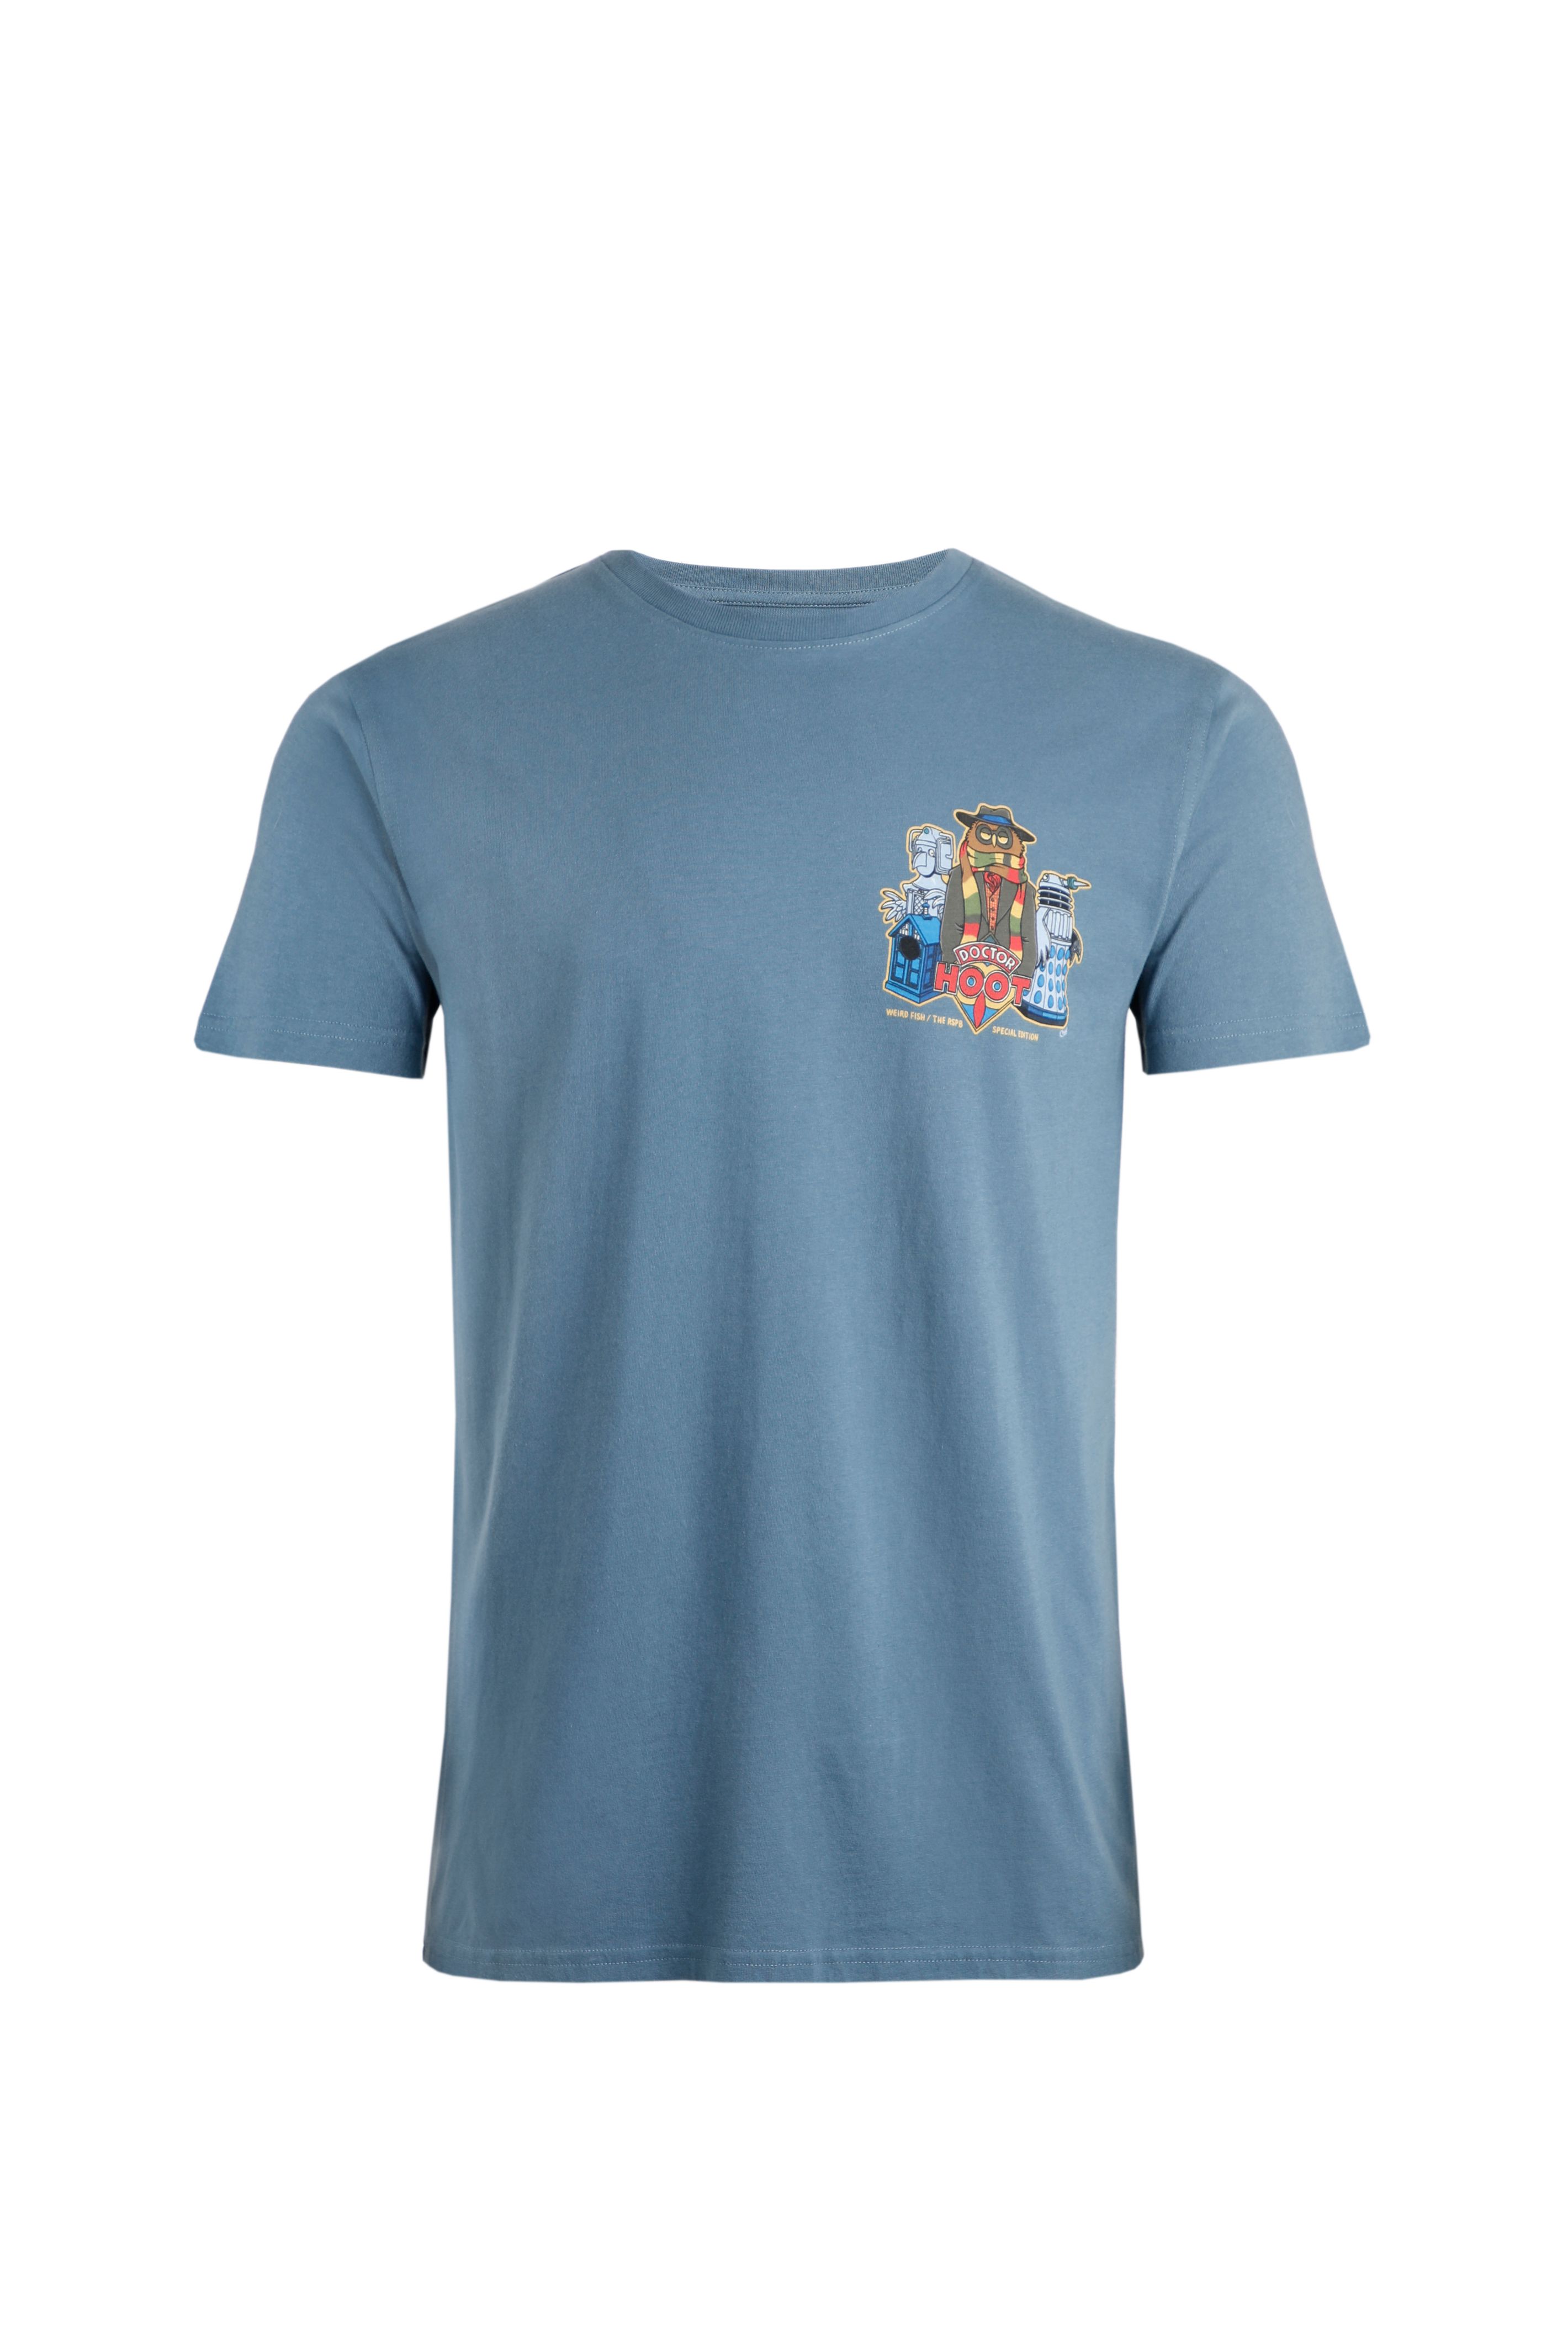 Doctor Hoot Charity Artist T-Shirt RSPB Blue Mirage | Weird Fish